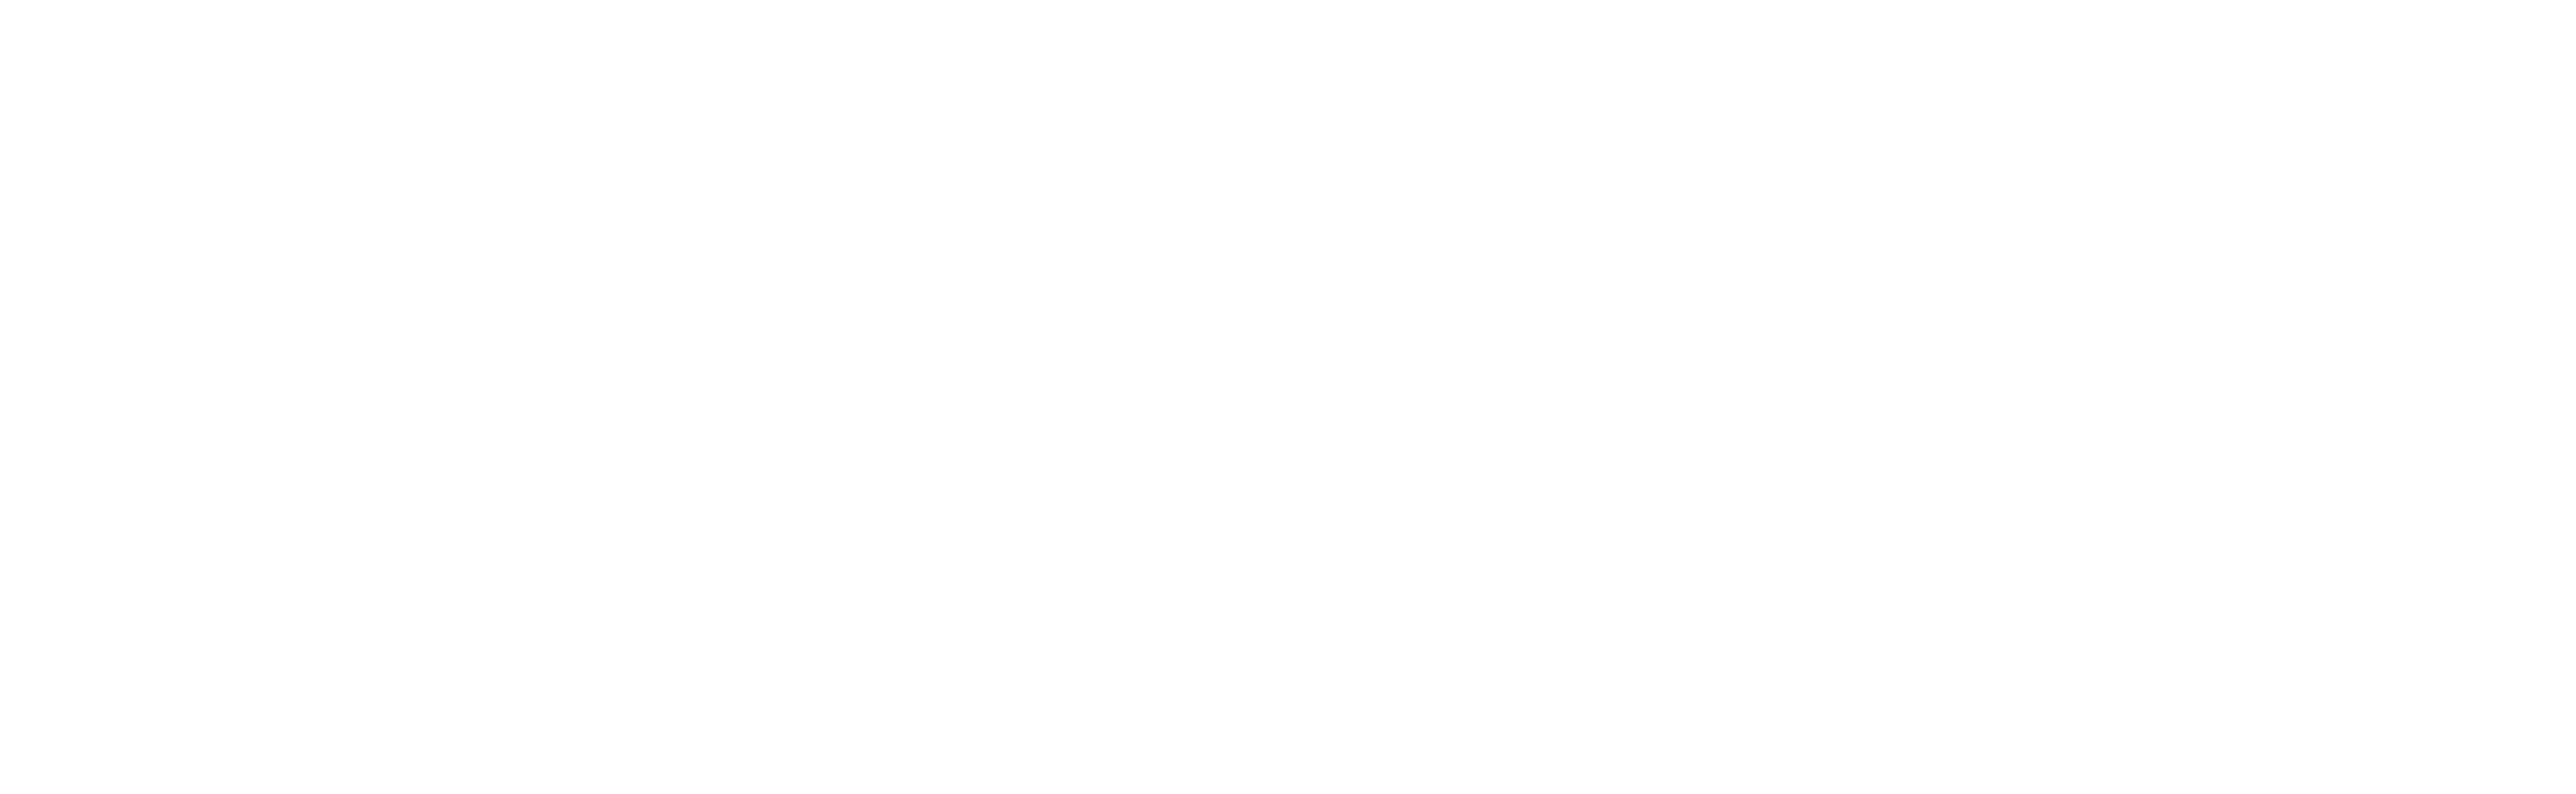 Clinica Veterinaria dell'Orologio logo